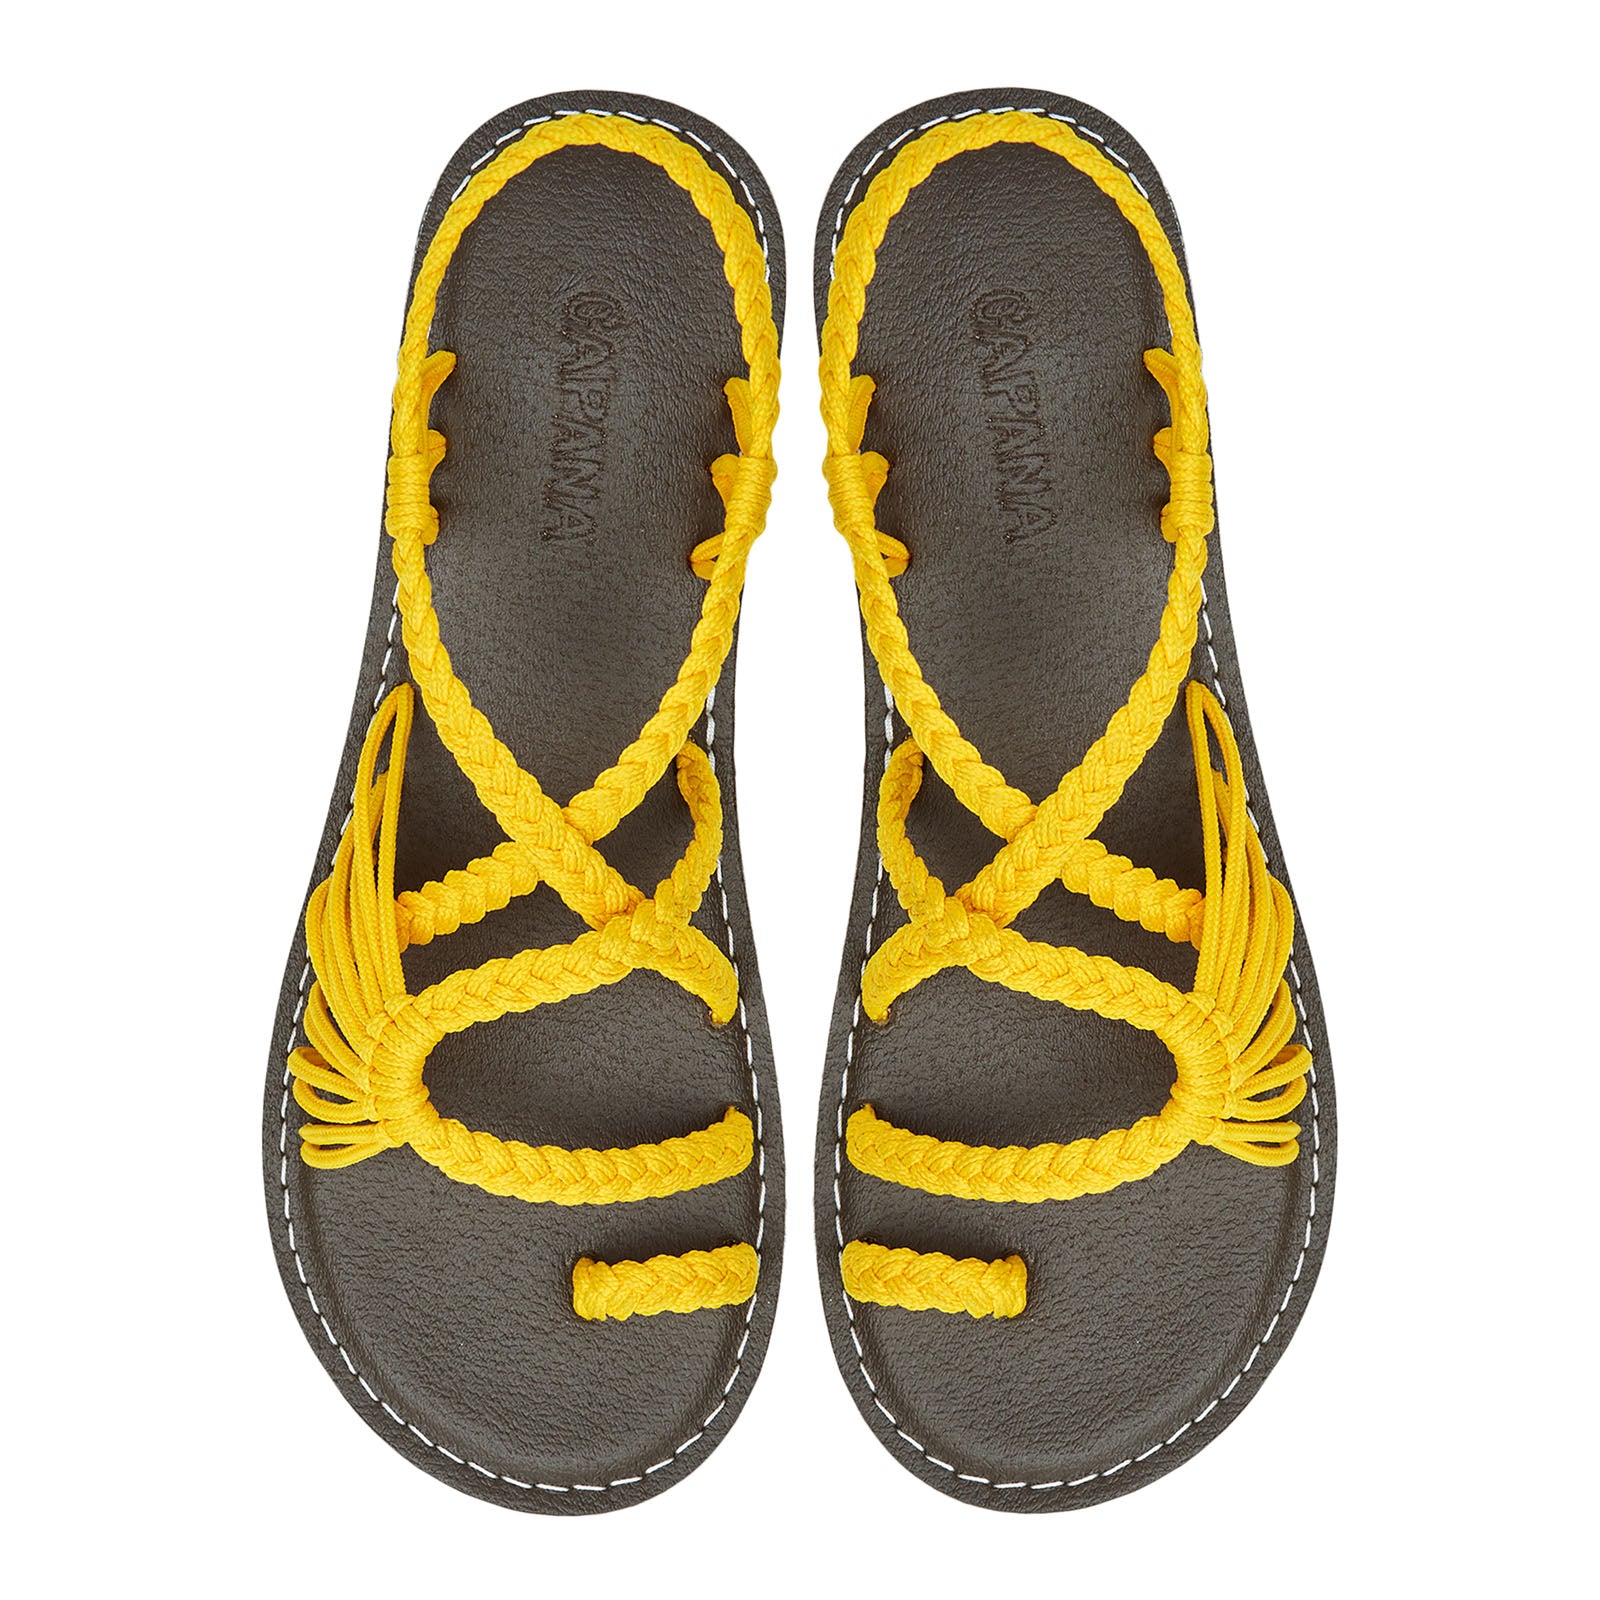 Commune Golden Yellow Rope Sandals Marigold loop design Flat sandals for women